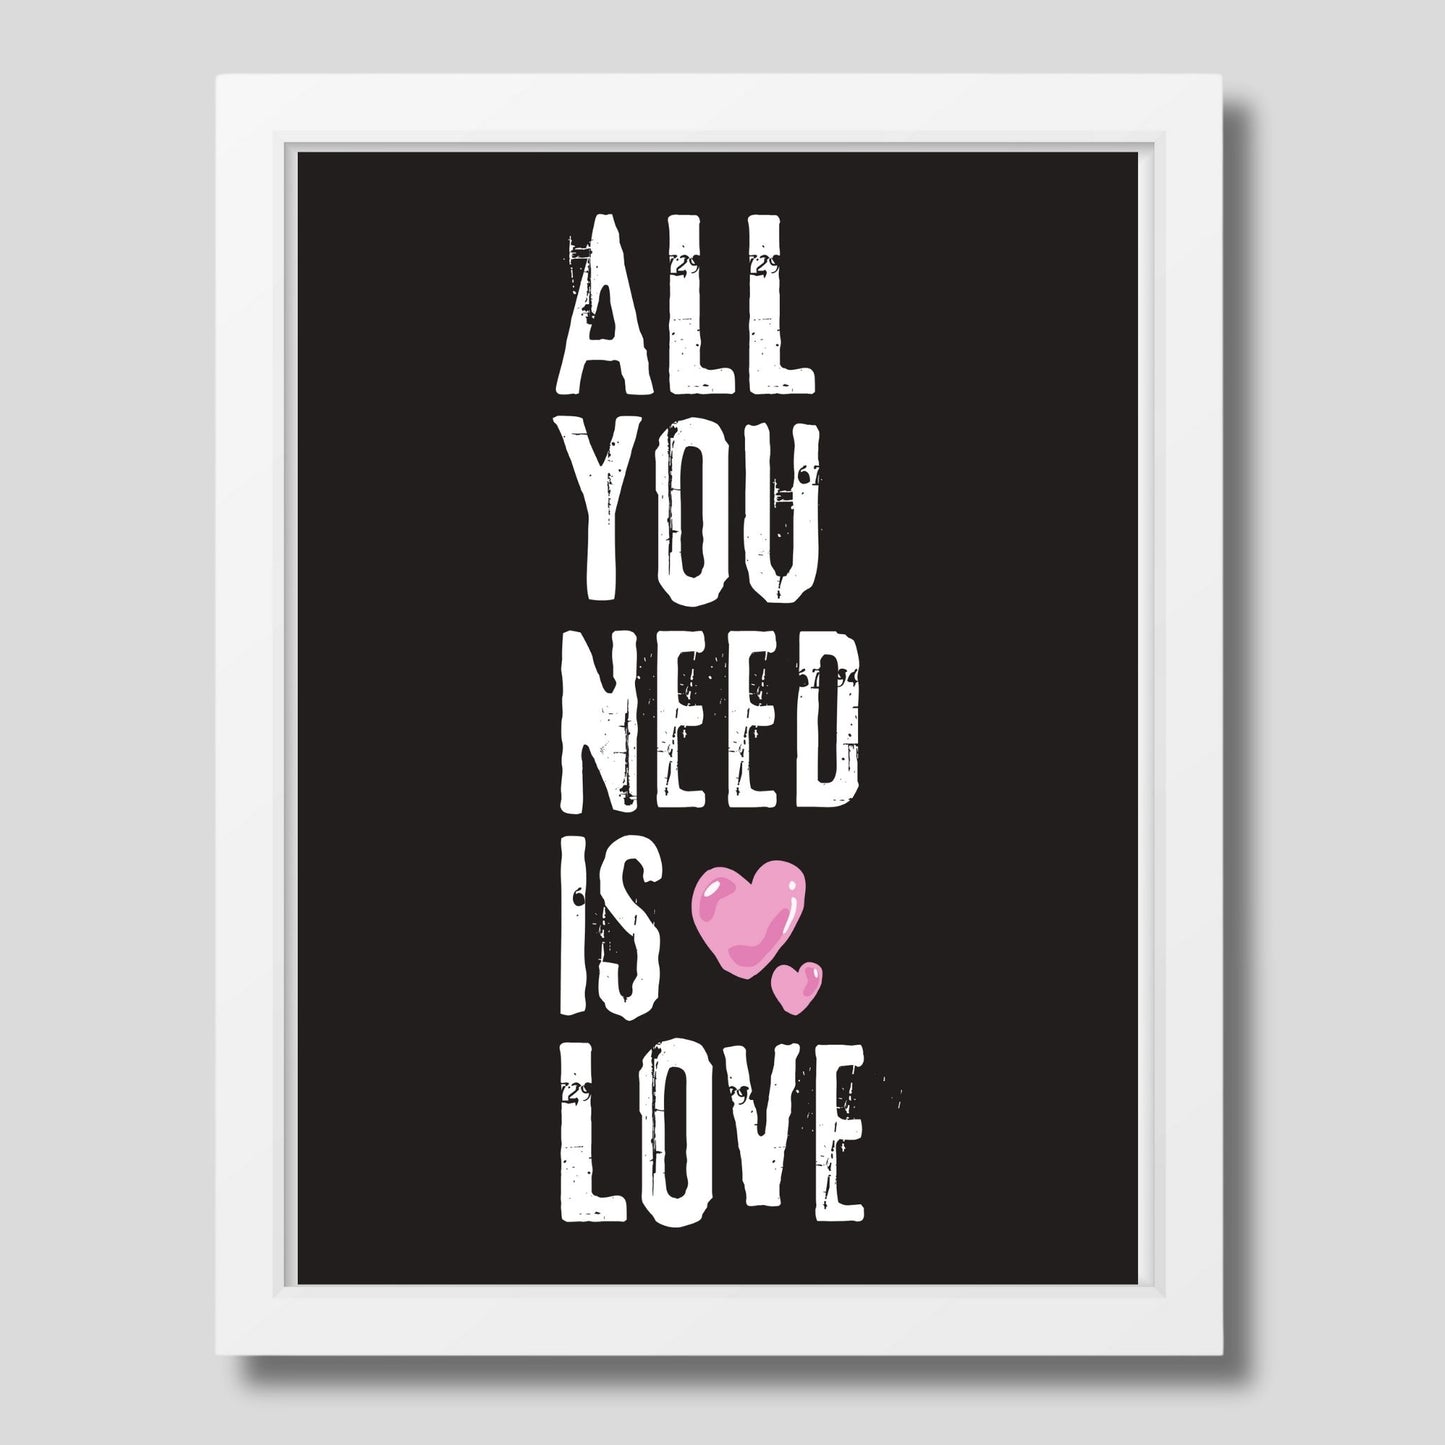 ALL YOU NEED IS LOVE - grafisk tekstplakat med hvit tekst på sort bakgrunn, og to rosa hjerter.  Illustrasjon viser plakat i hvit ramme.